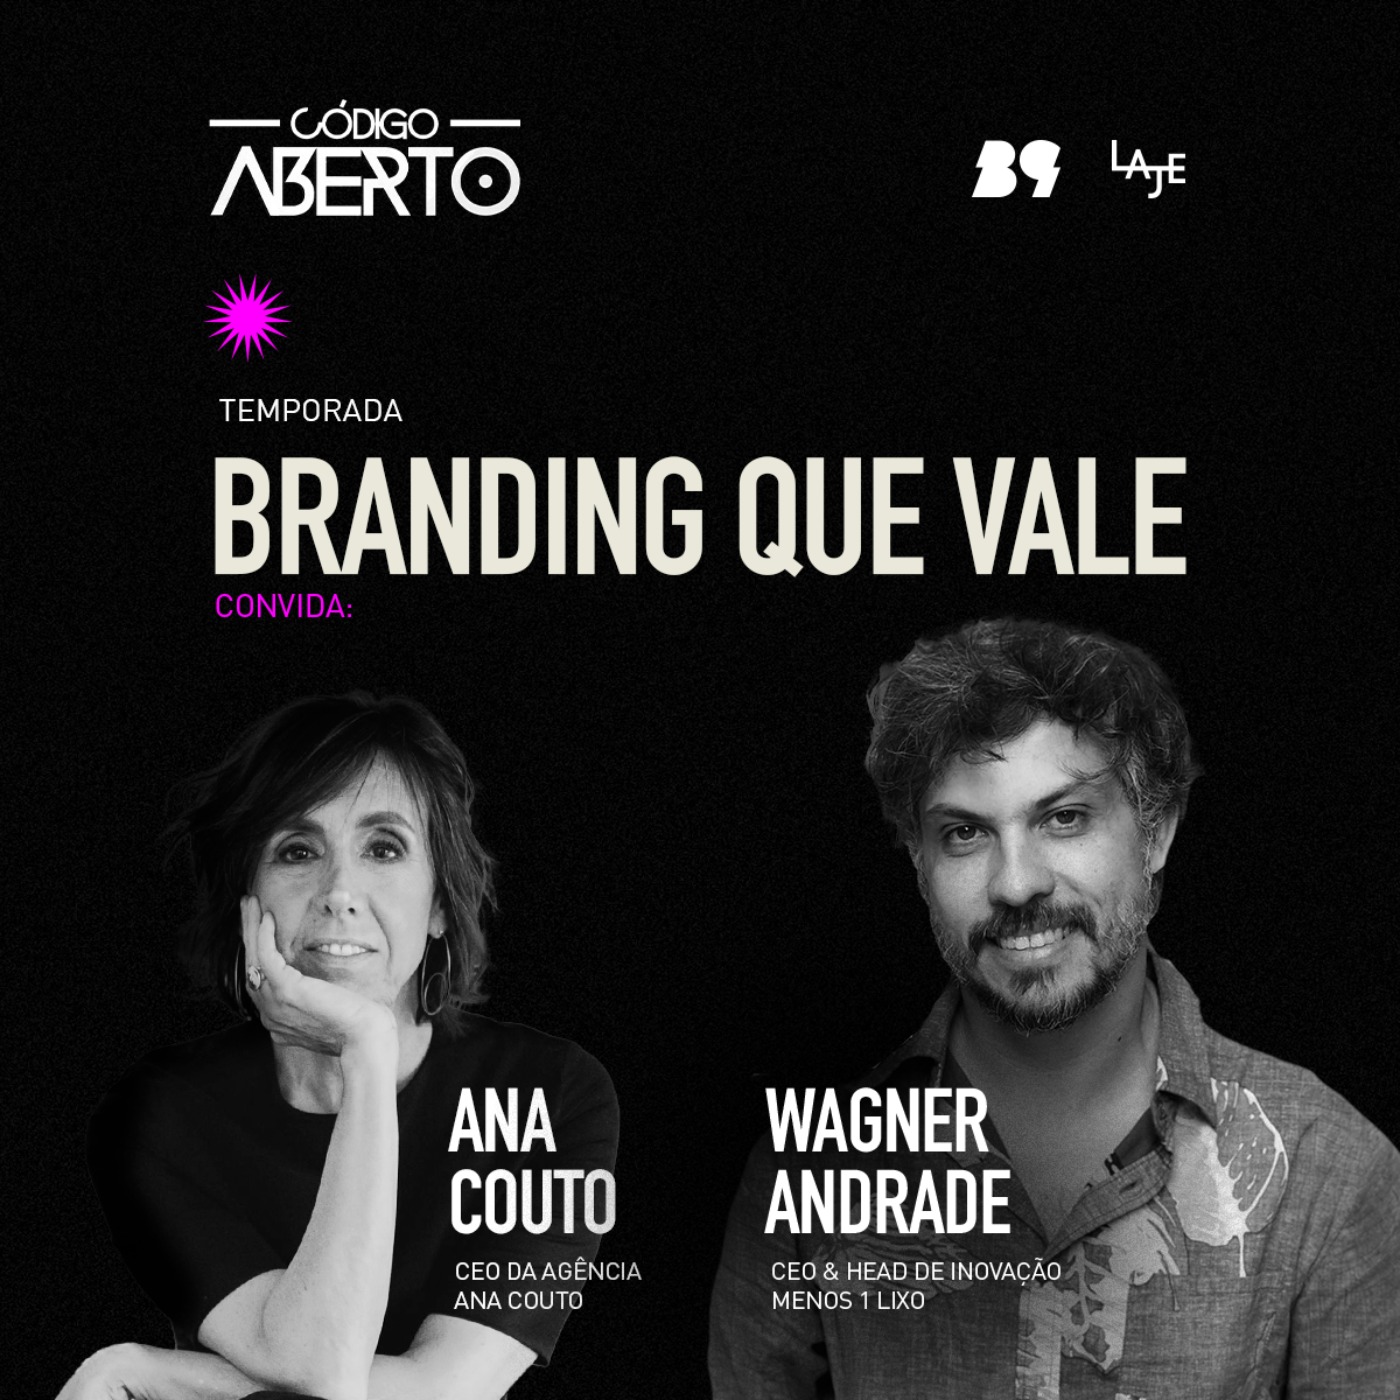 cover art for Wagner Andrade, CEO & Head de Inovação, Menos 1 Lixo